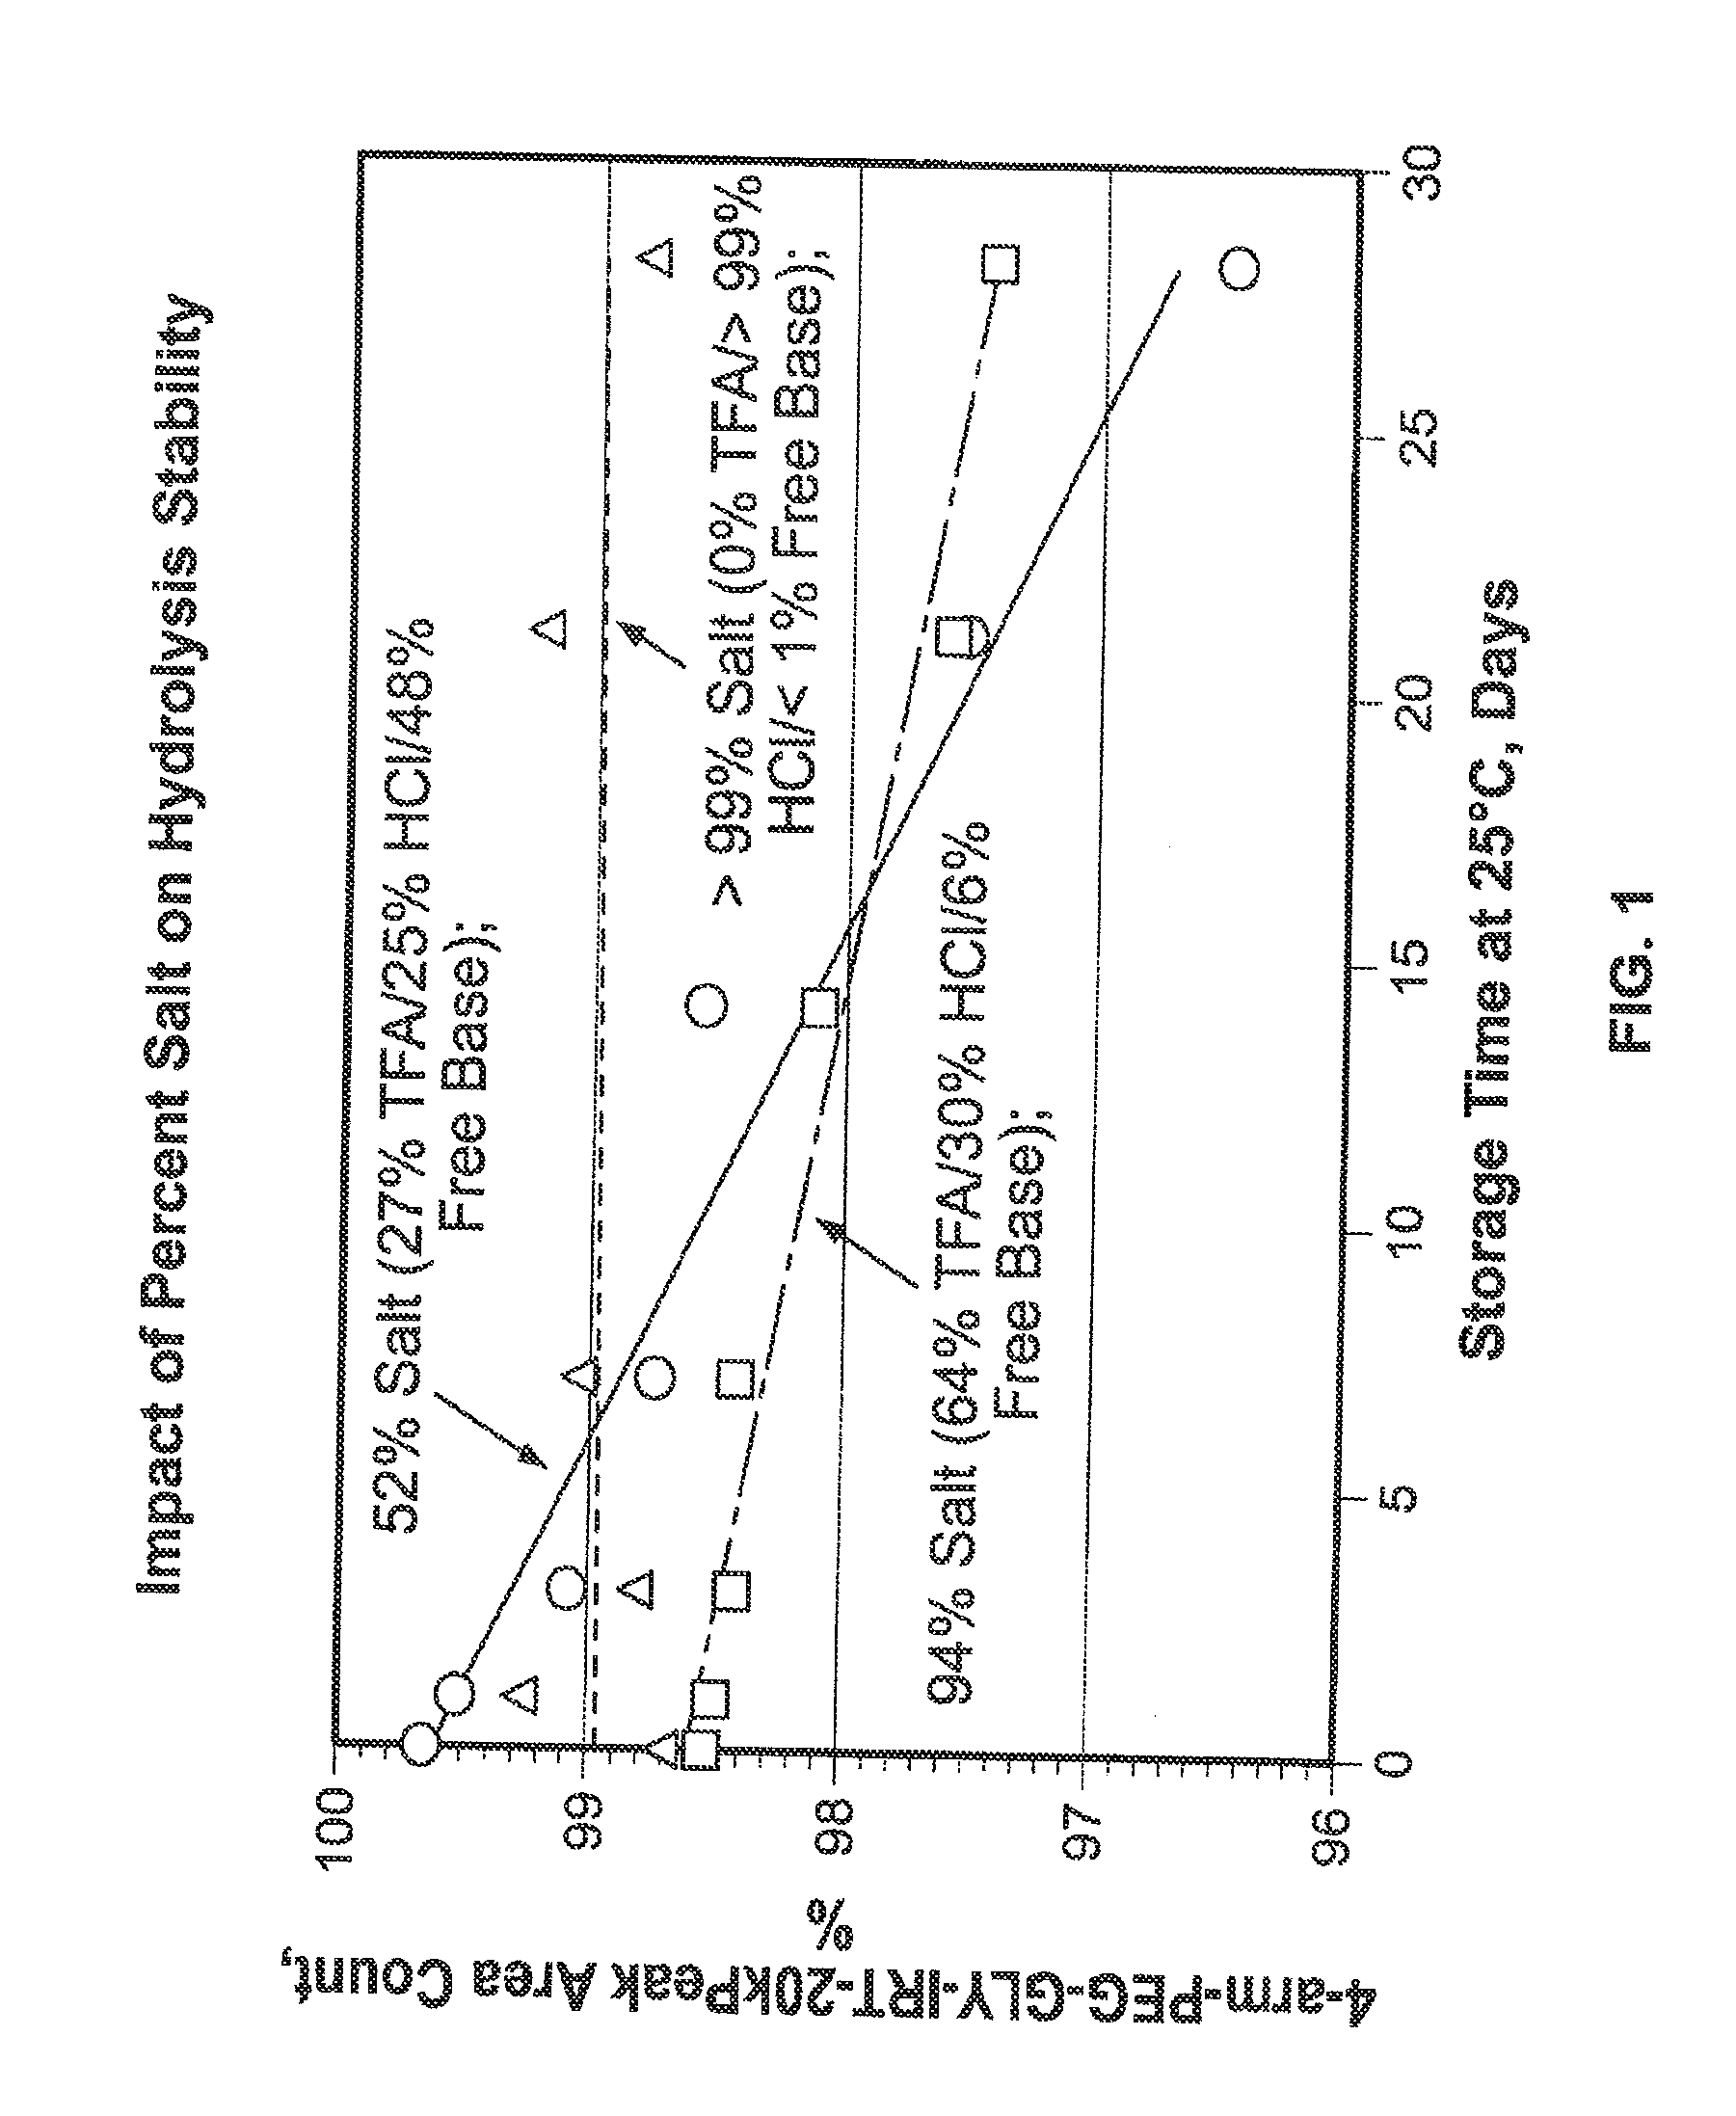 Acid salt forms of polymer-drug conjugates and alkoxylation methods